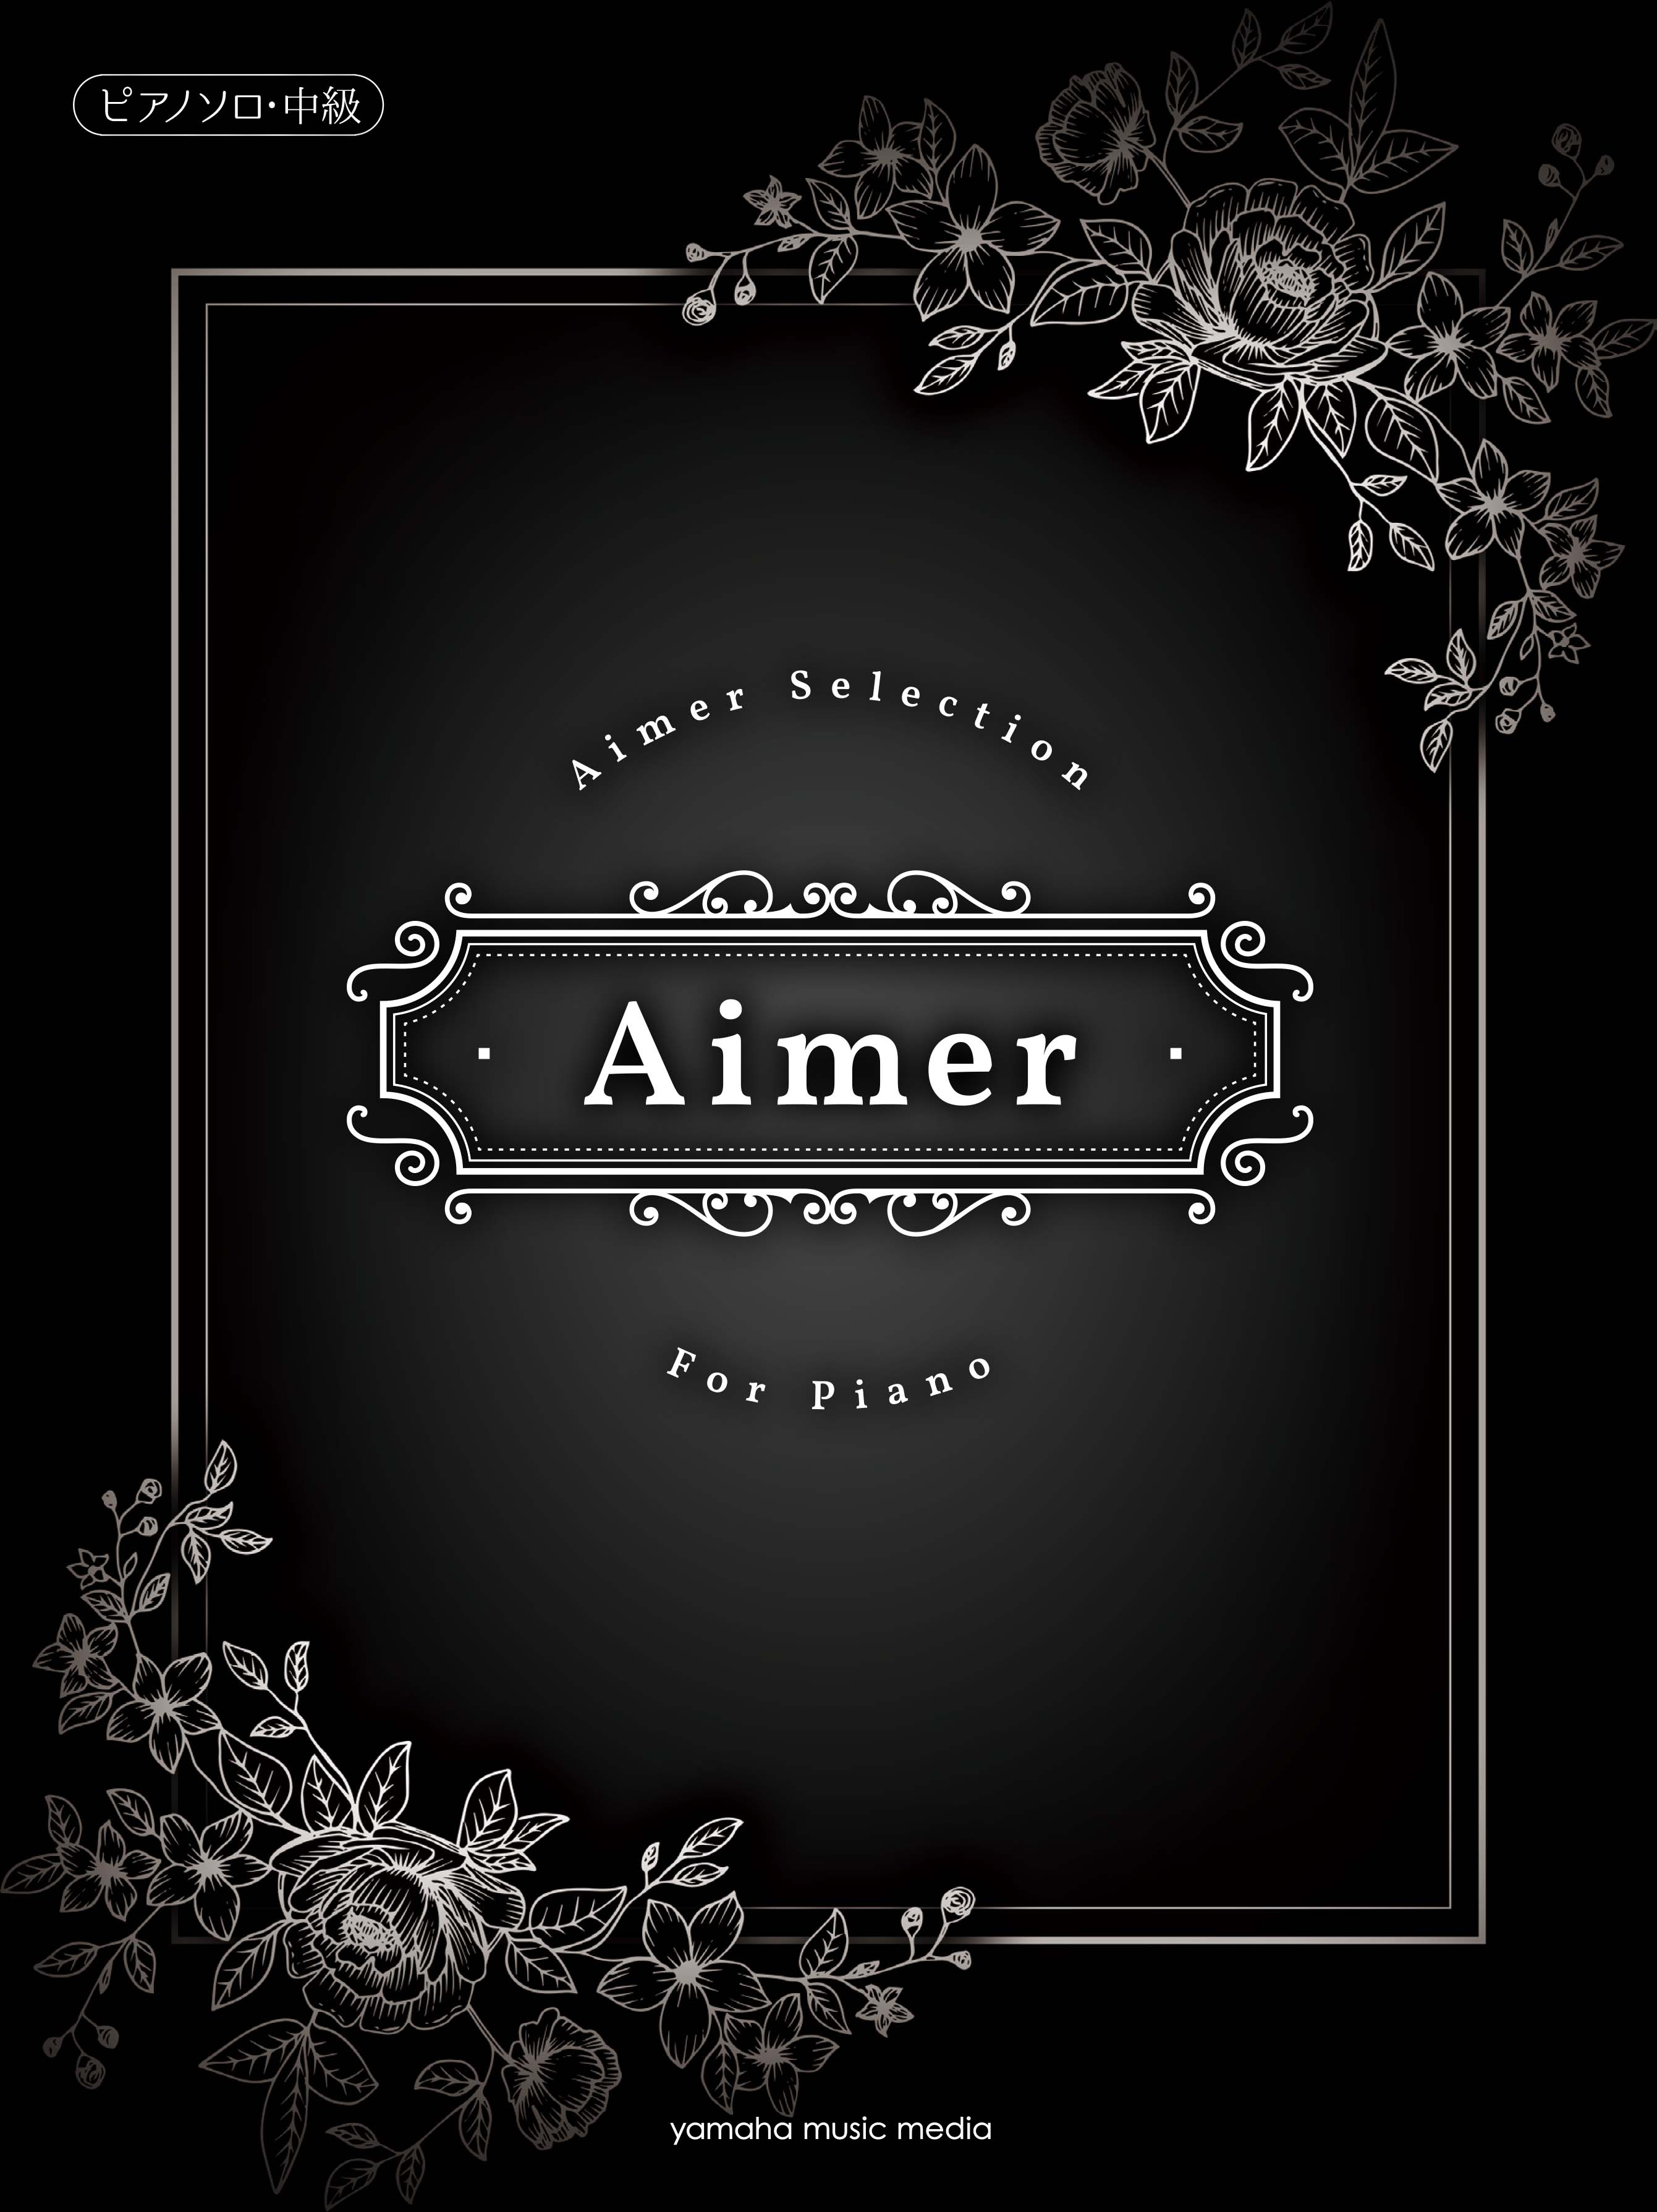 ピアノソロ楽譜集 Aimer Selection For Piano 発売開始 蝶々結び 茜さす Brave Shine など これまでにリリースされた楽曲から全15曲を収載 ヤマハミュージックエンタテインメントホールディングスのプレスリリース